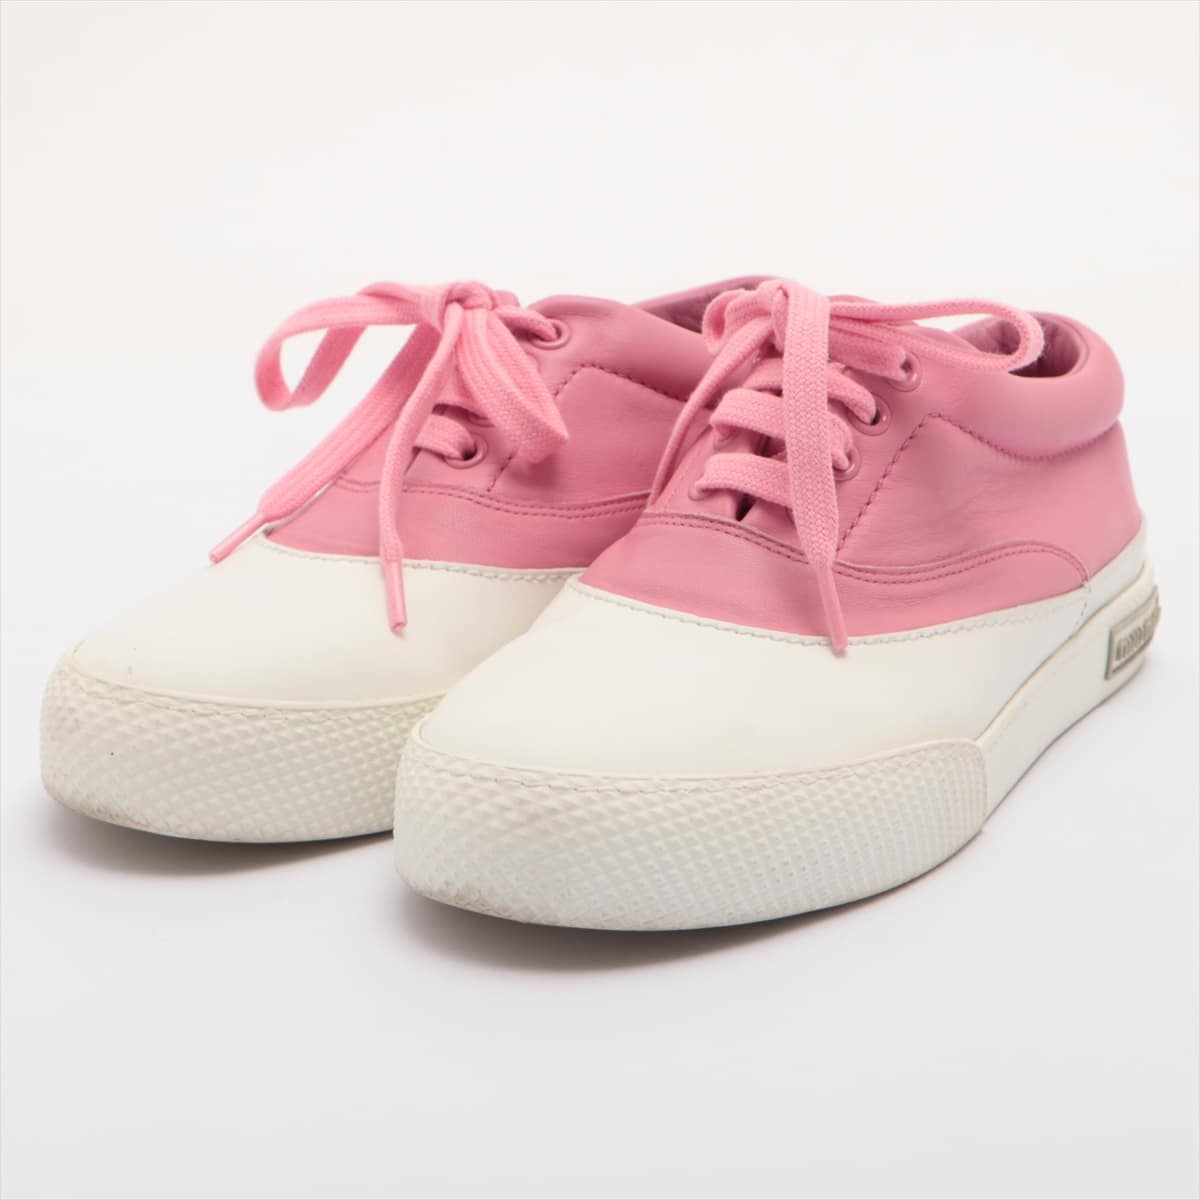 Miu Miu Leather Sneakers 35 Ladies' Pink